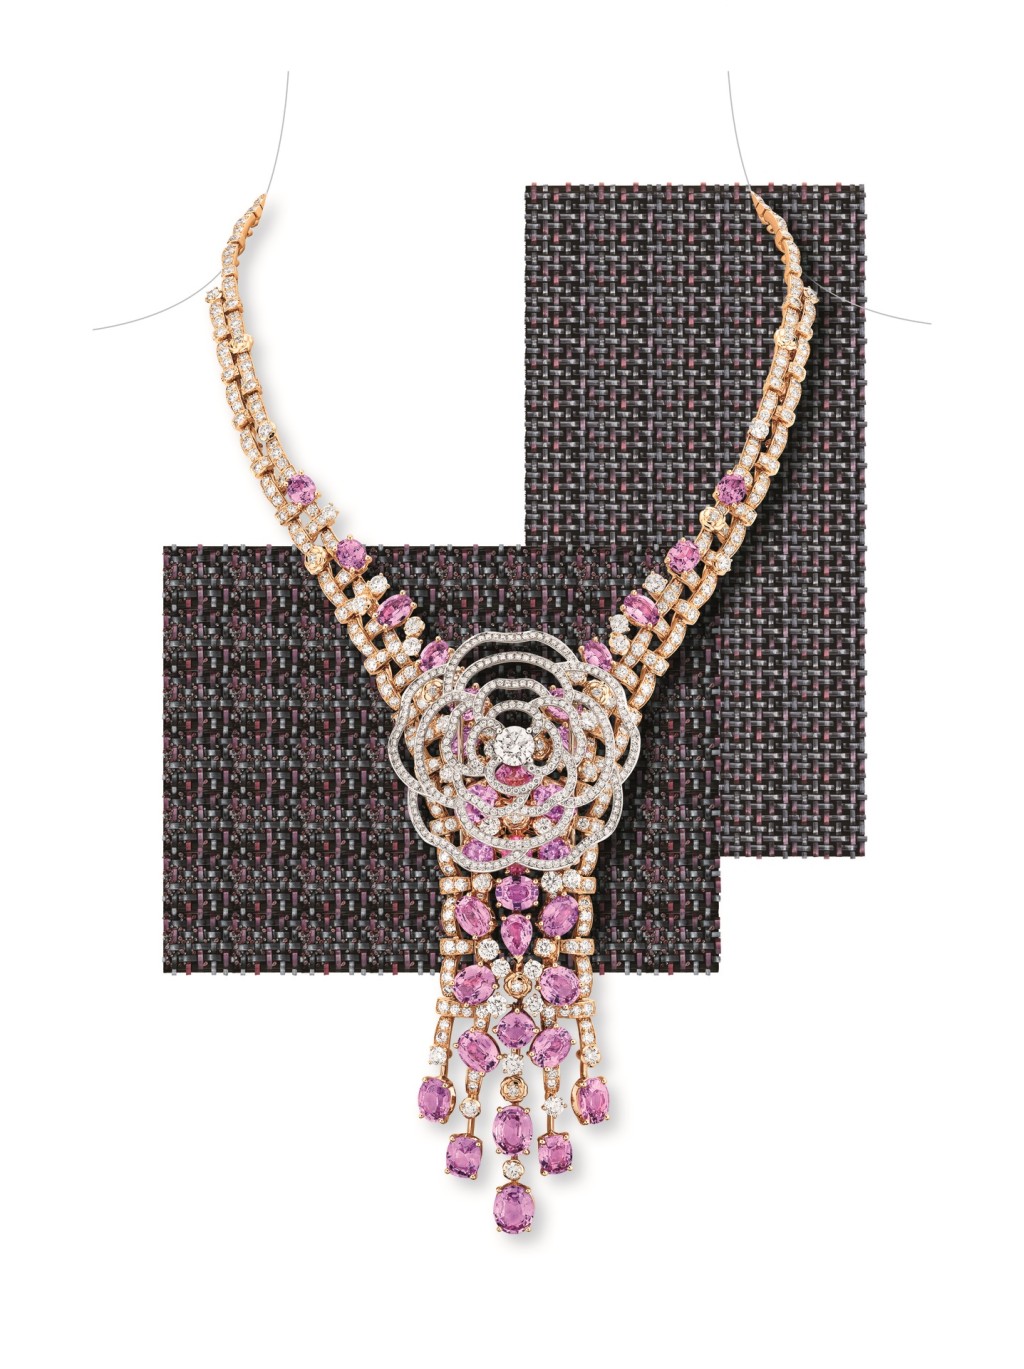 Tweed Camélia粉紅金及白金項鏈鑲嵌鑽石及粉紅藍寶石，中央的山茶花圖騰可單獨作胸針佩戴。